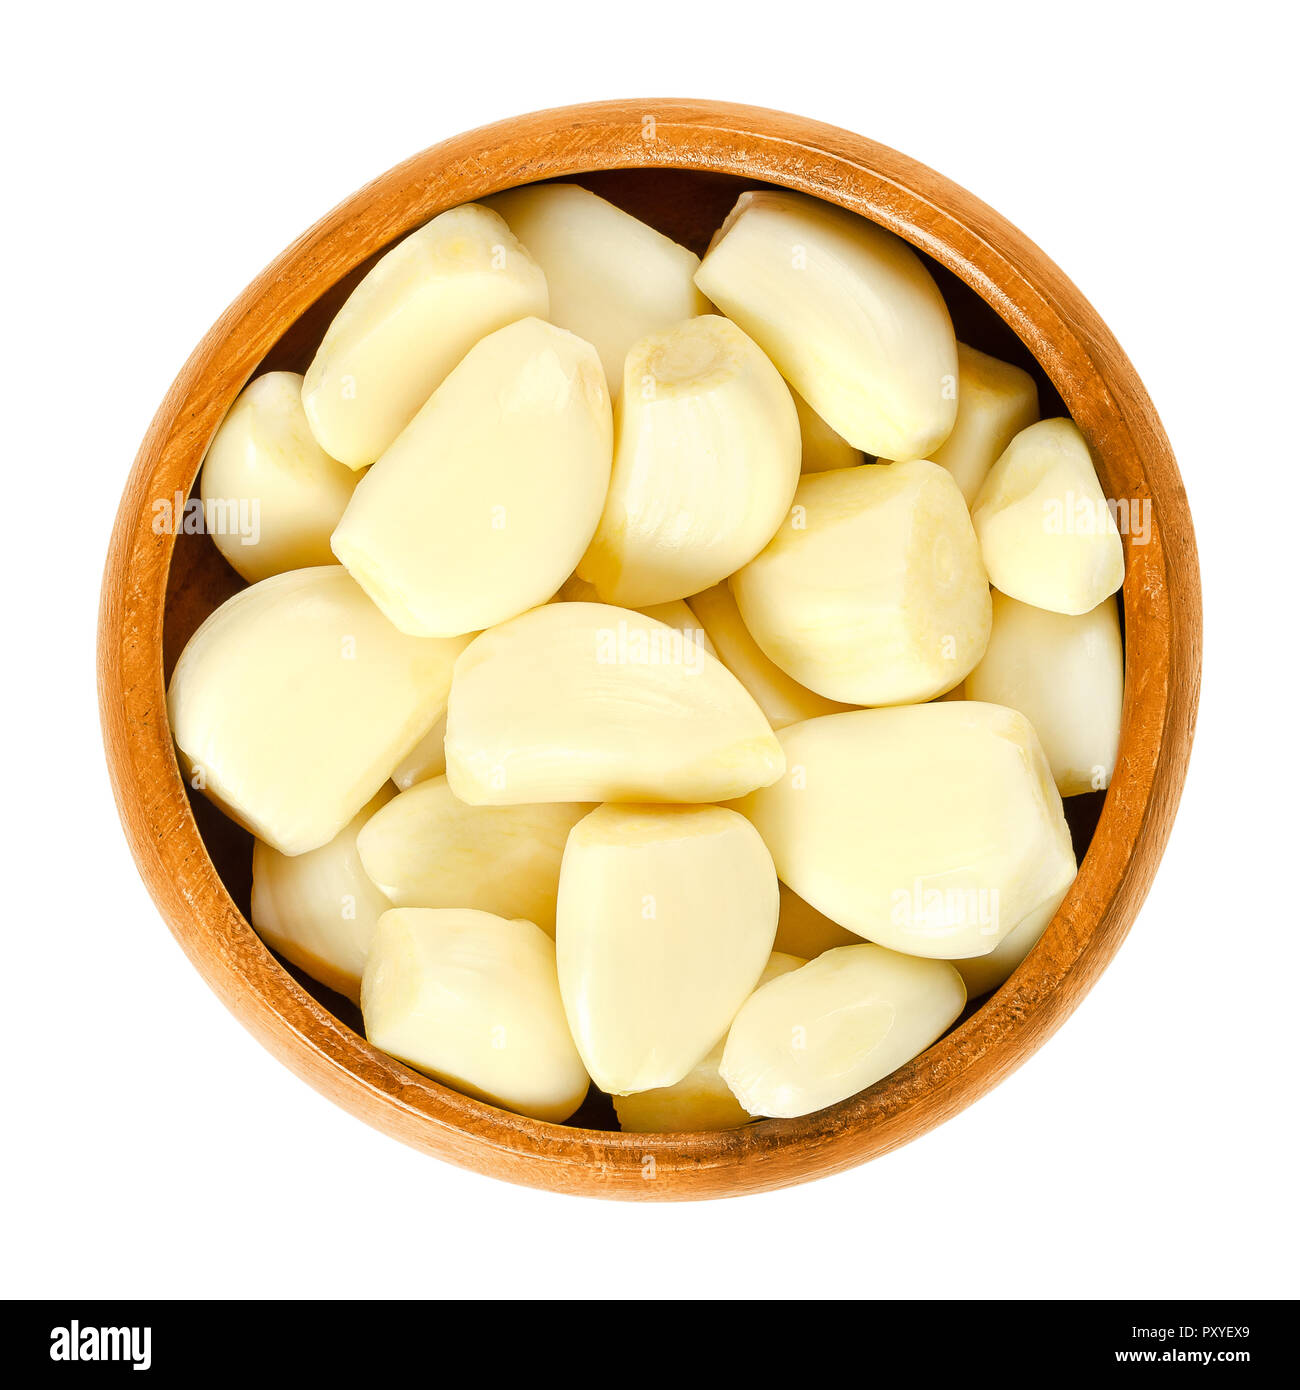 Spicchi di aglio sgusciati in ciotola di legno. Allium sativum, con il suo sapore pungente è utilizzato come condimento o condimento e anche in medicina. Foto Stock